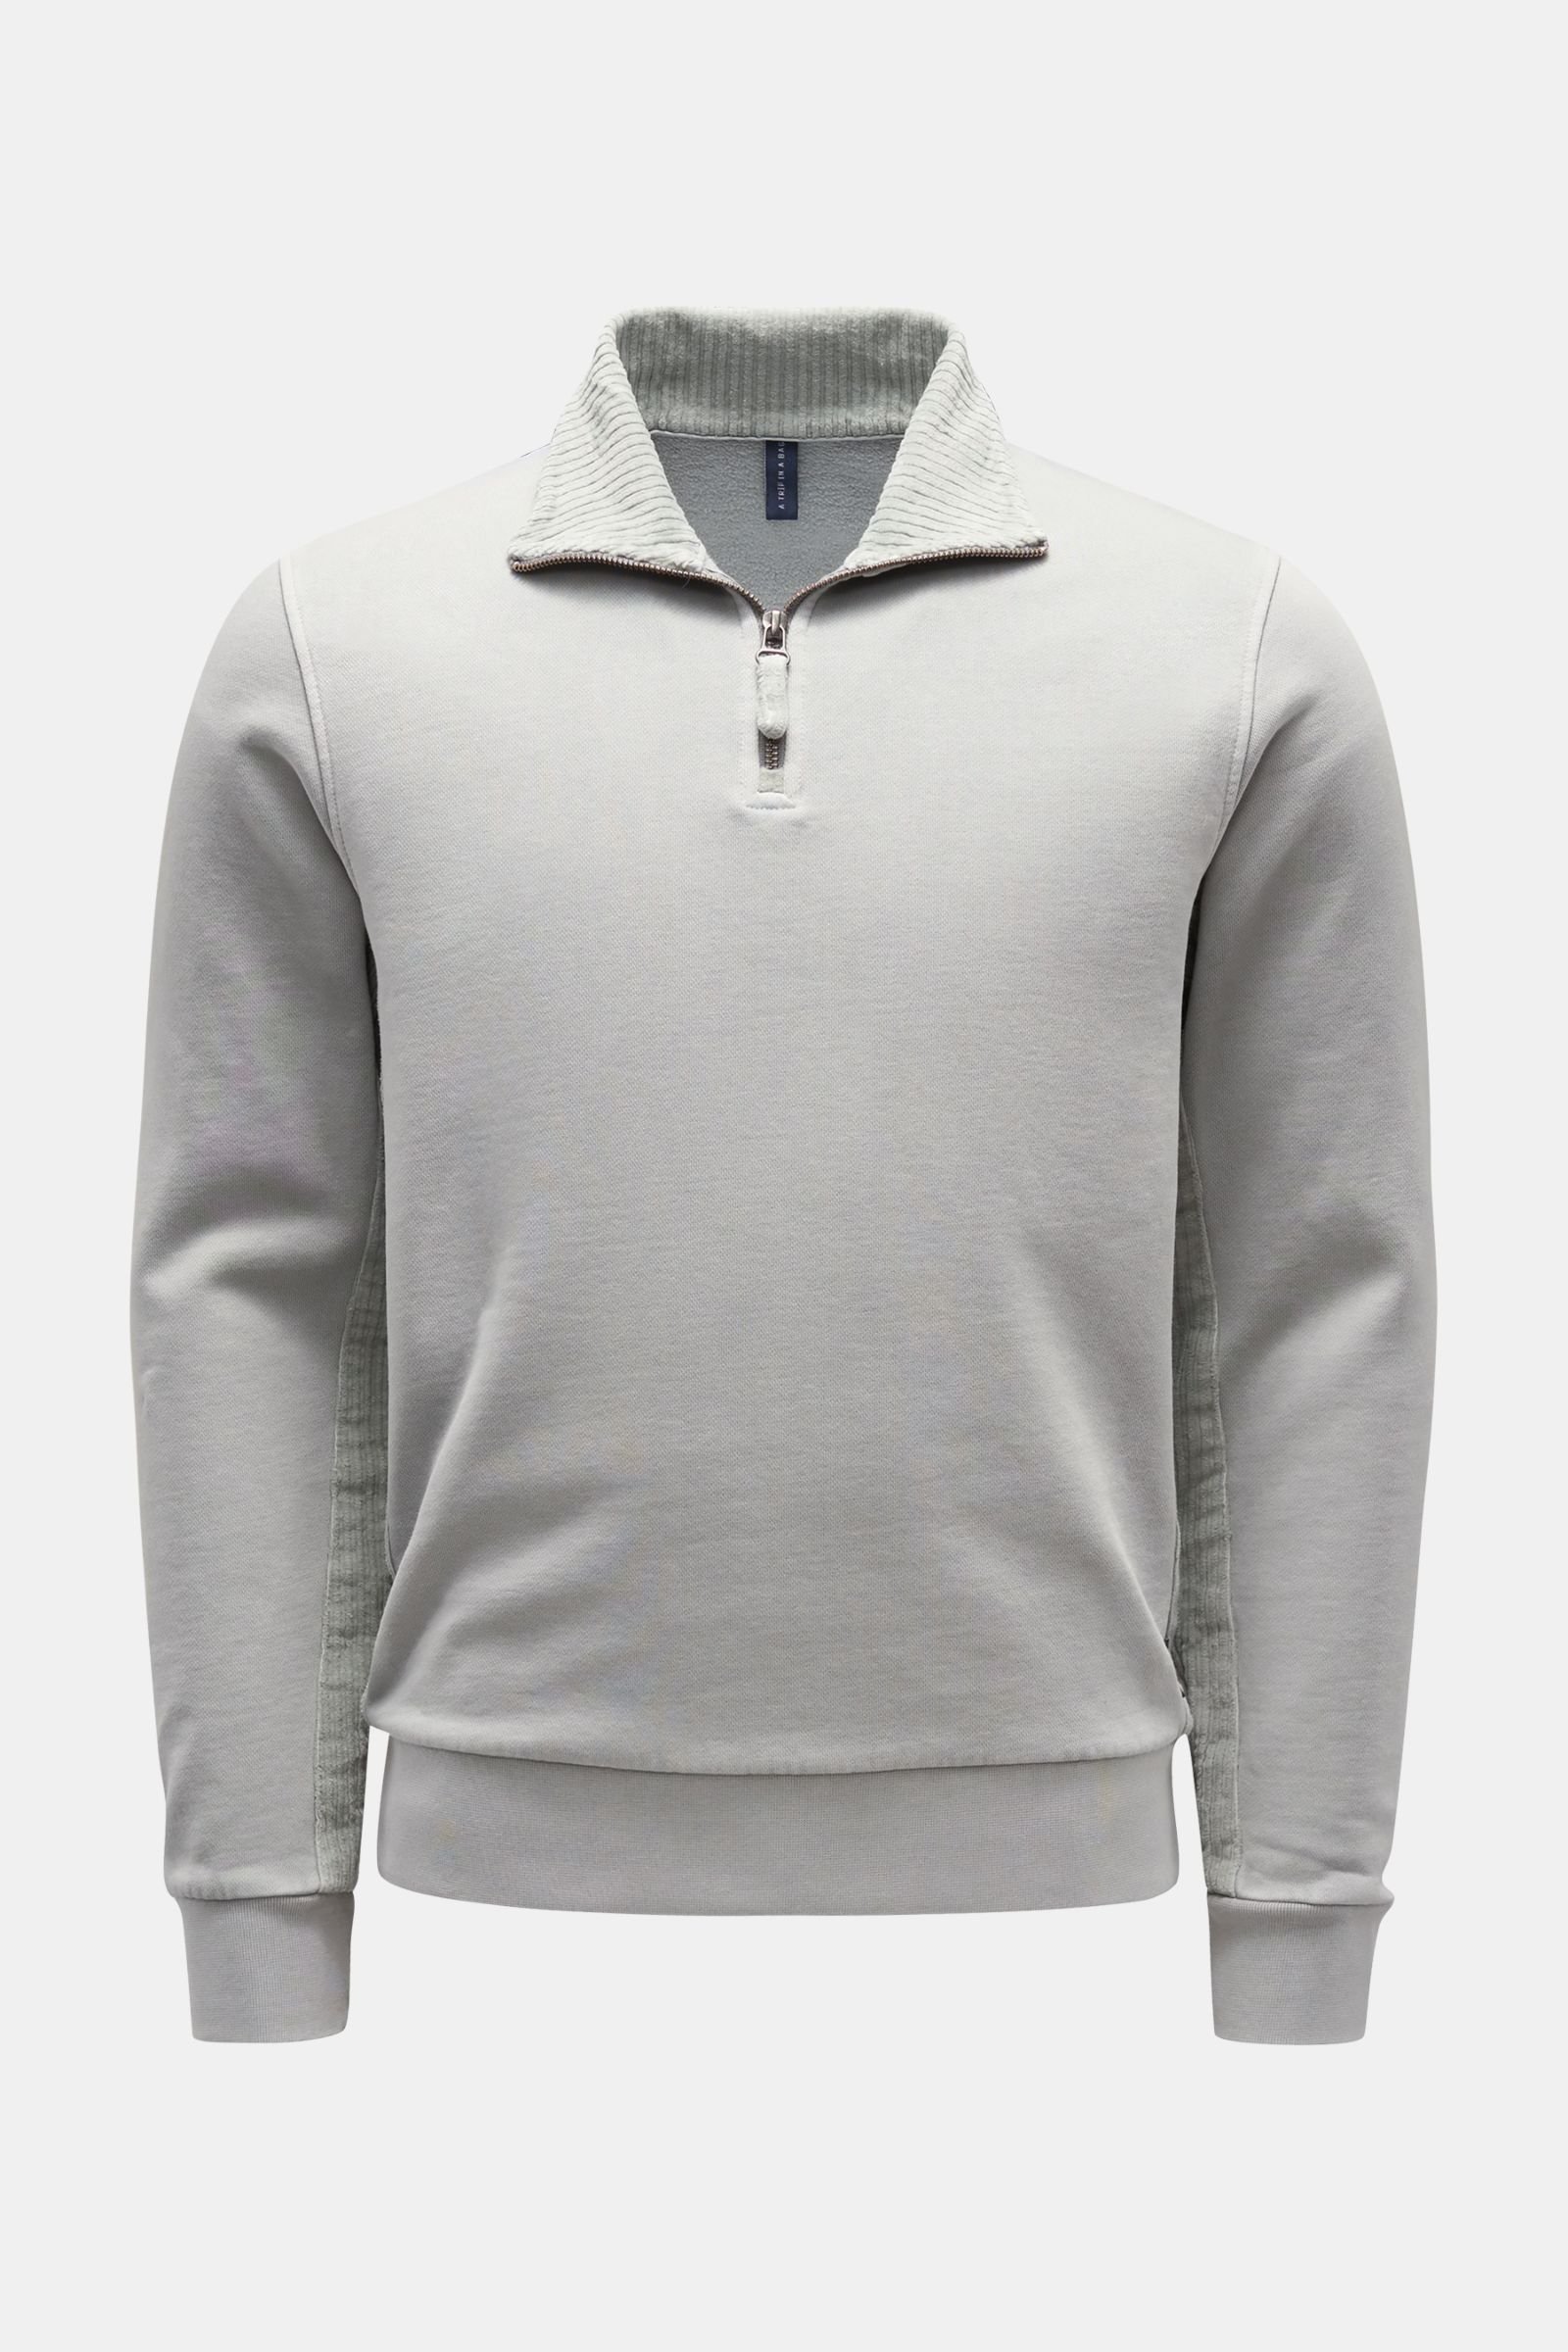 Sweat half-zip jumper 'AF 1/4 Zip' light grey